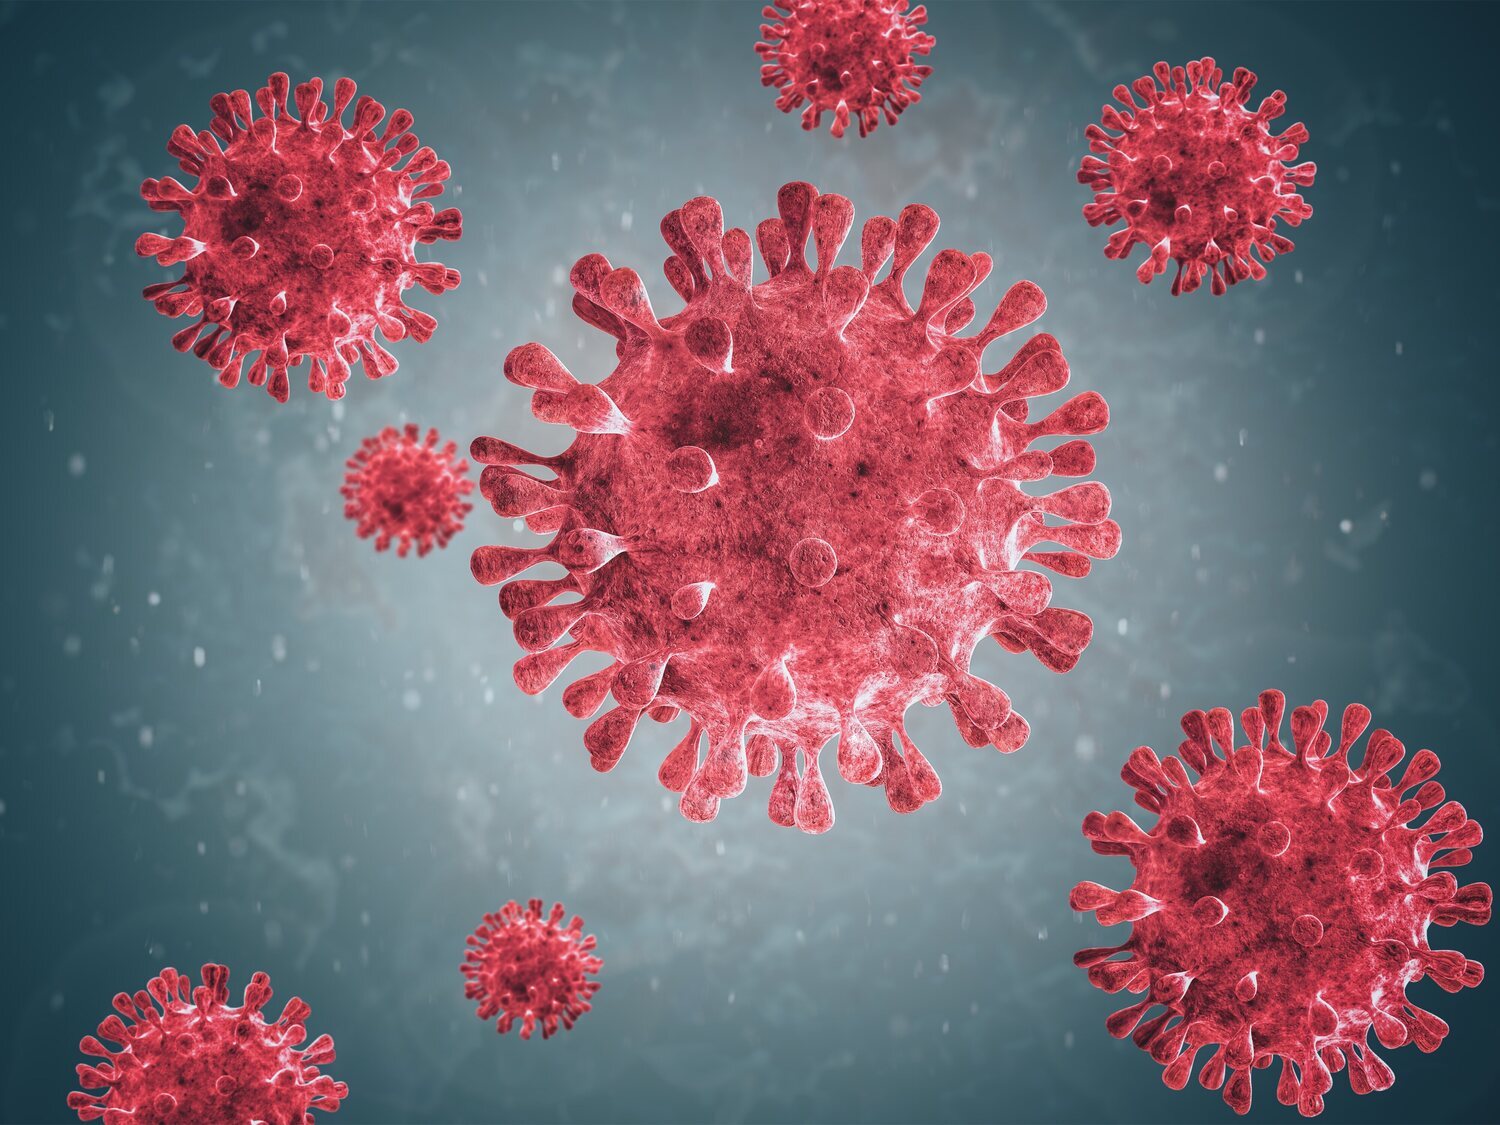 Alerta sanitaria por la expansión del virus sincitial: síntomas, vías de transmisión y cómo prevenirlo